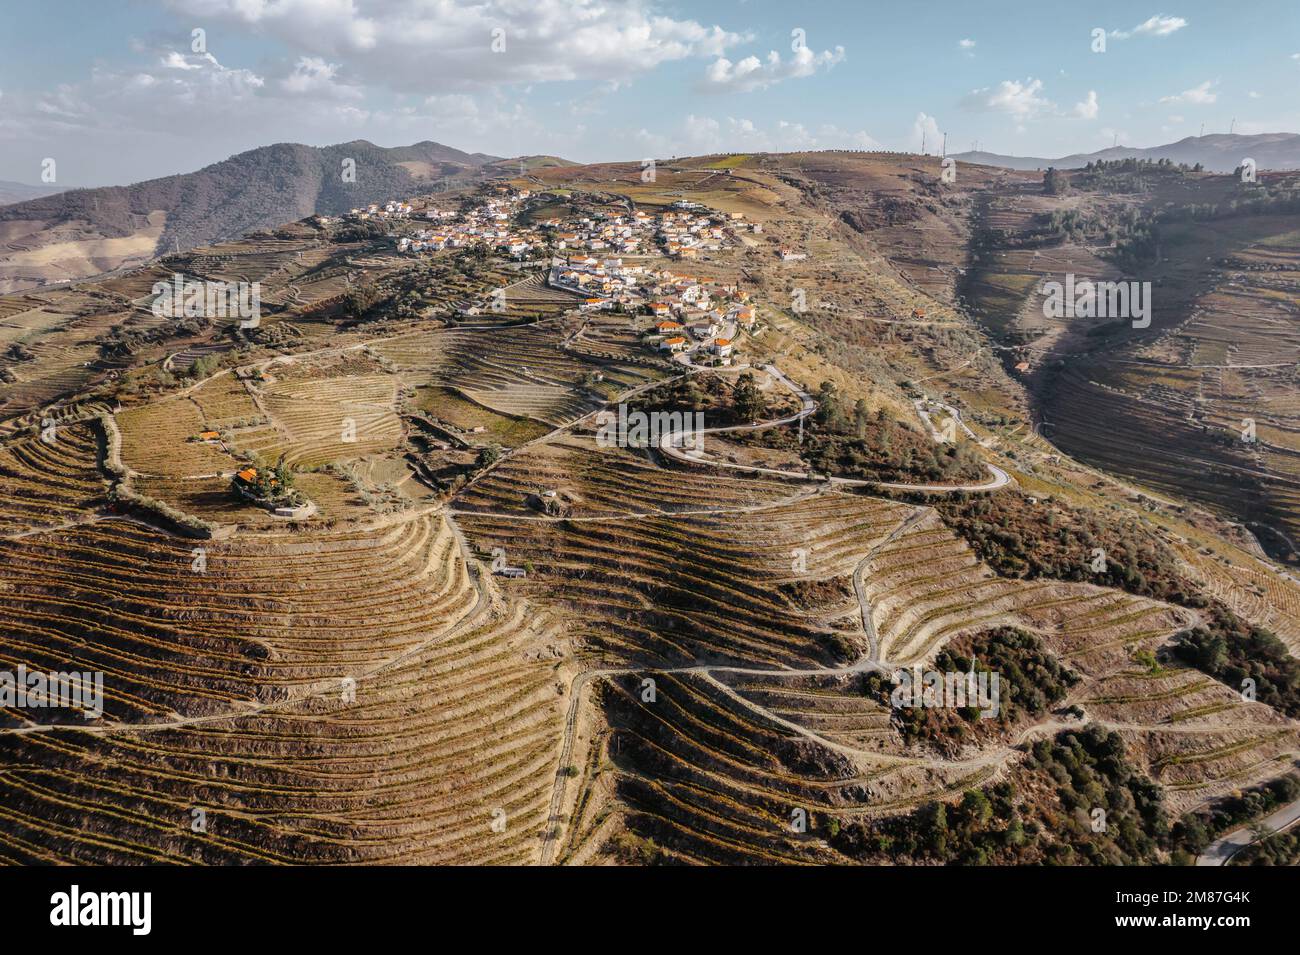 Vue aérienne de la vallée du Douro. Vignobles en terrasse et paysage près de Pinhao, Portugal. Région viticole portugaise. Magnifique paysage d'automne. Banque D'Images